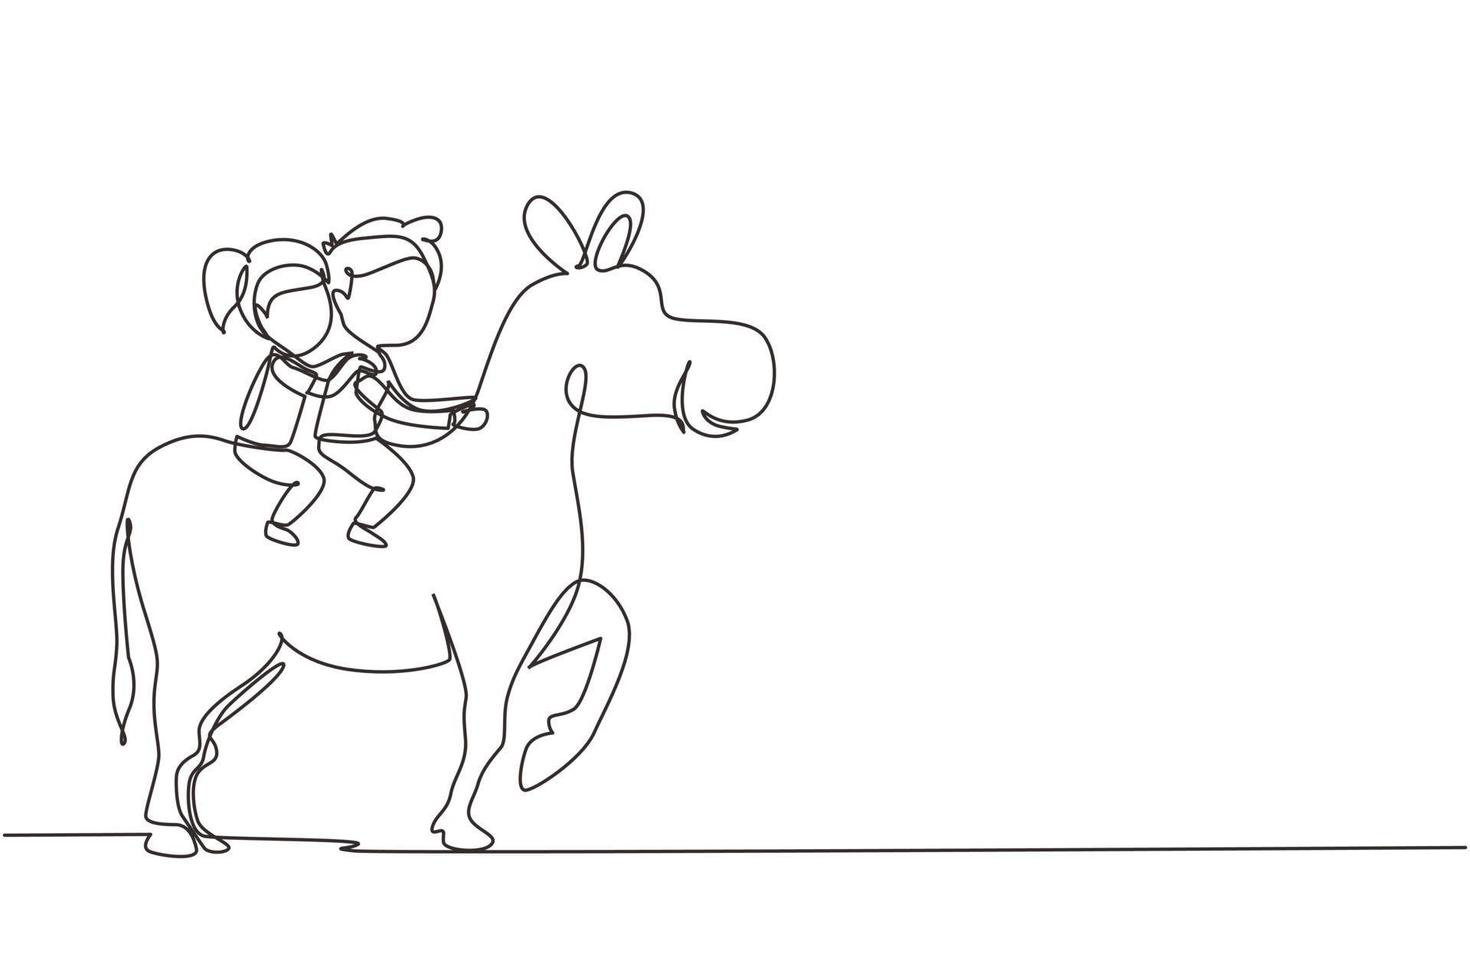 enkele doorlopende lijntekening gelukkige schattige jongen en meisje die samen op een ezel rijden. kinderen zitten op de rug ezel met zadel in ranch park. kinderen leren ezel te rijden. één lijn tekenen grafische vector